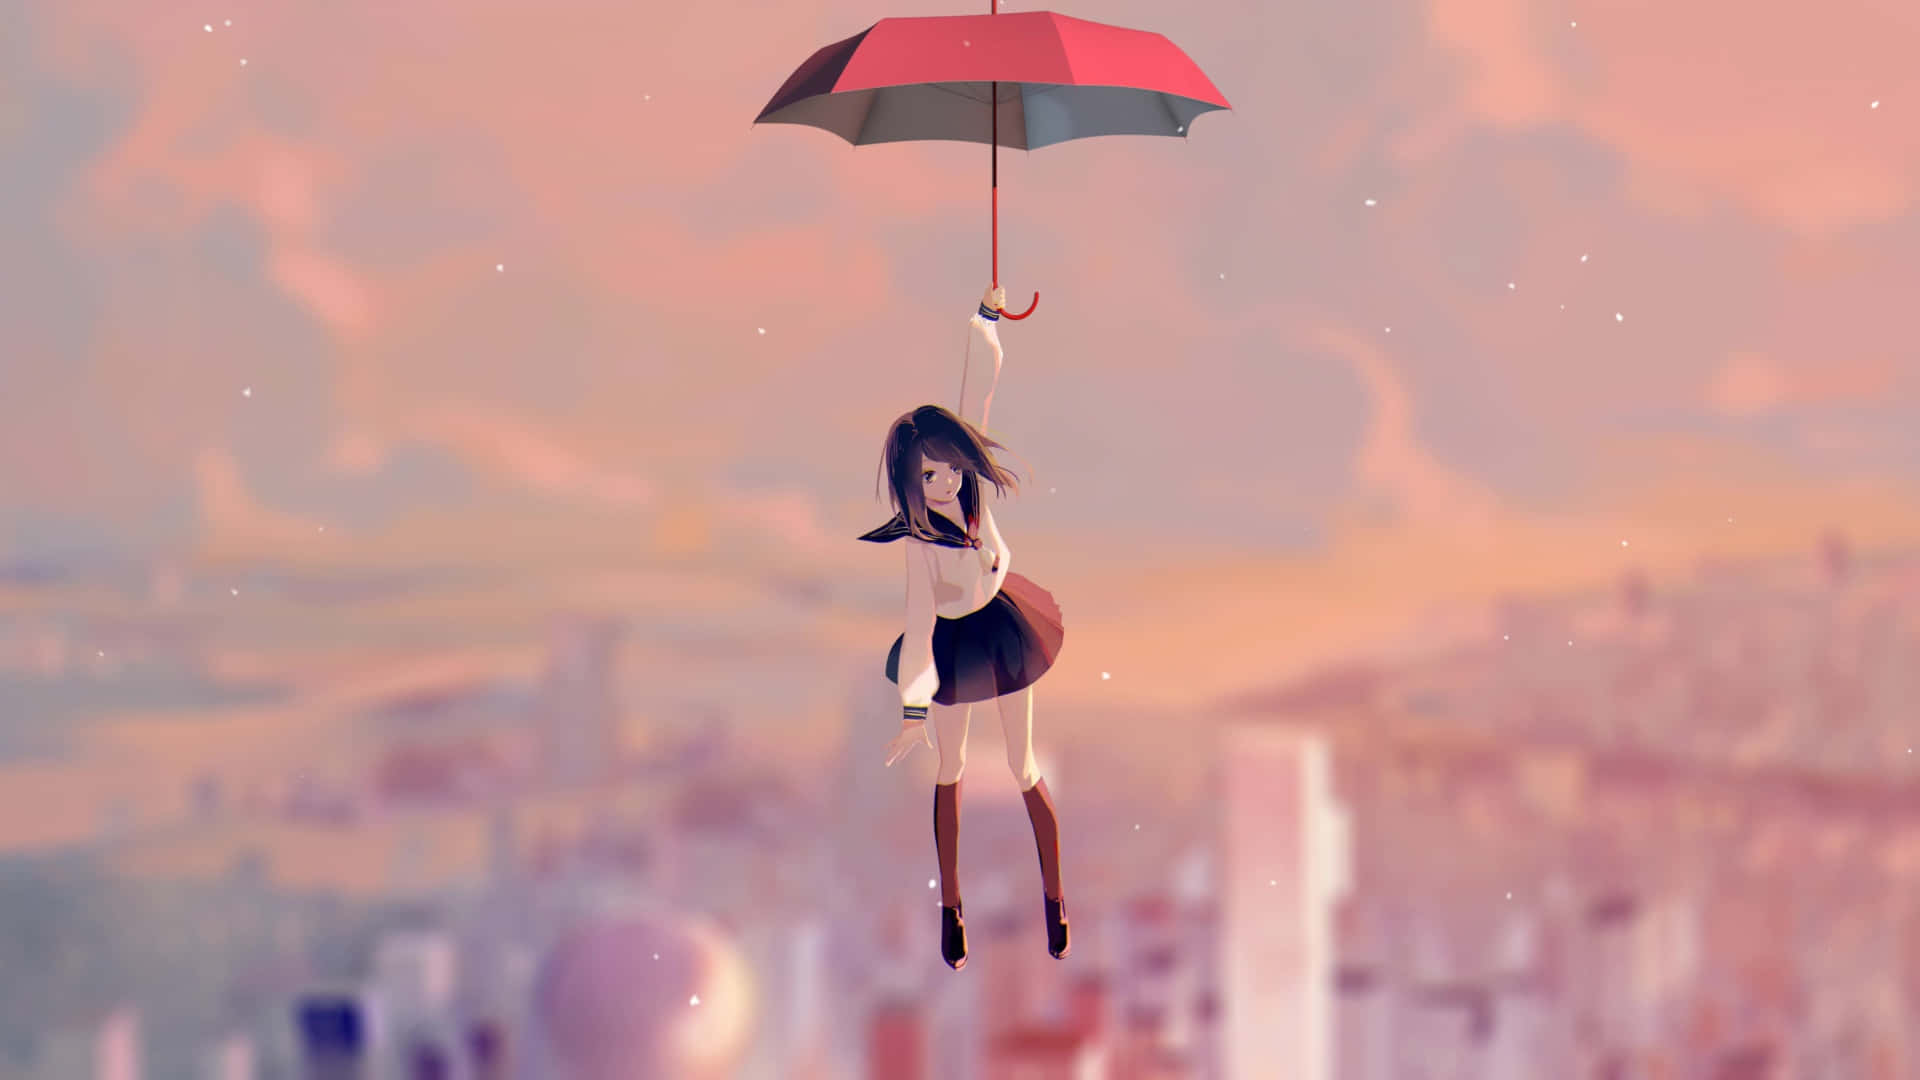 Fantasy Umbrella Flight.jpg Background